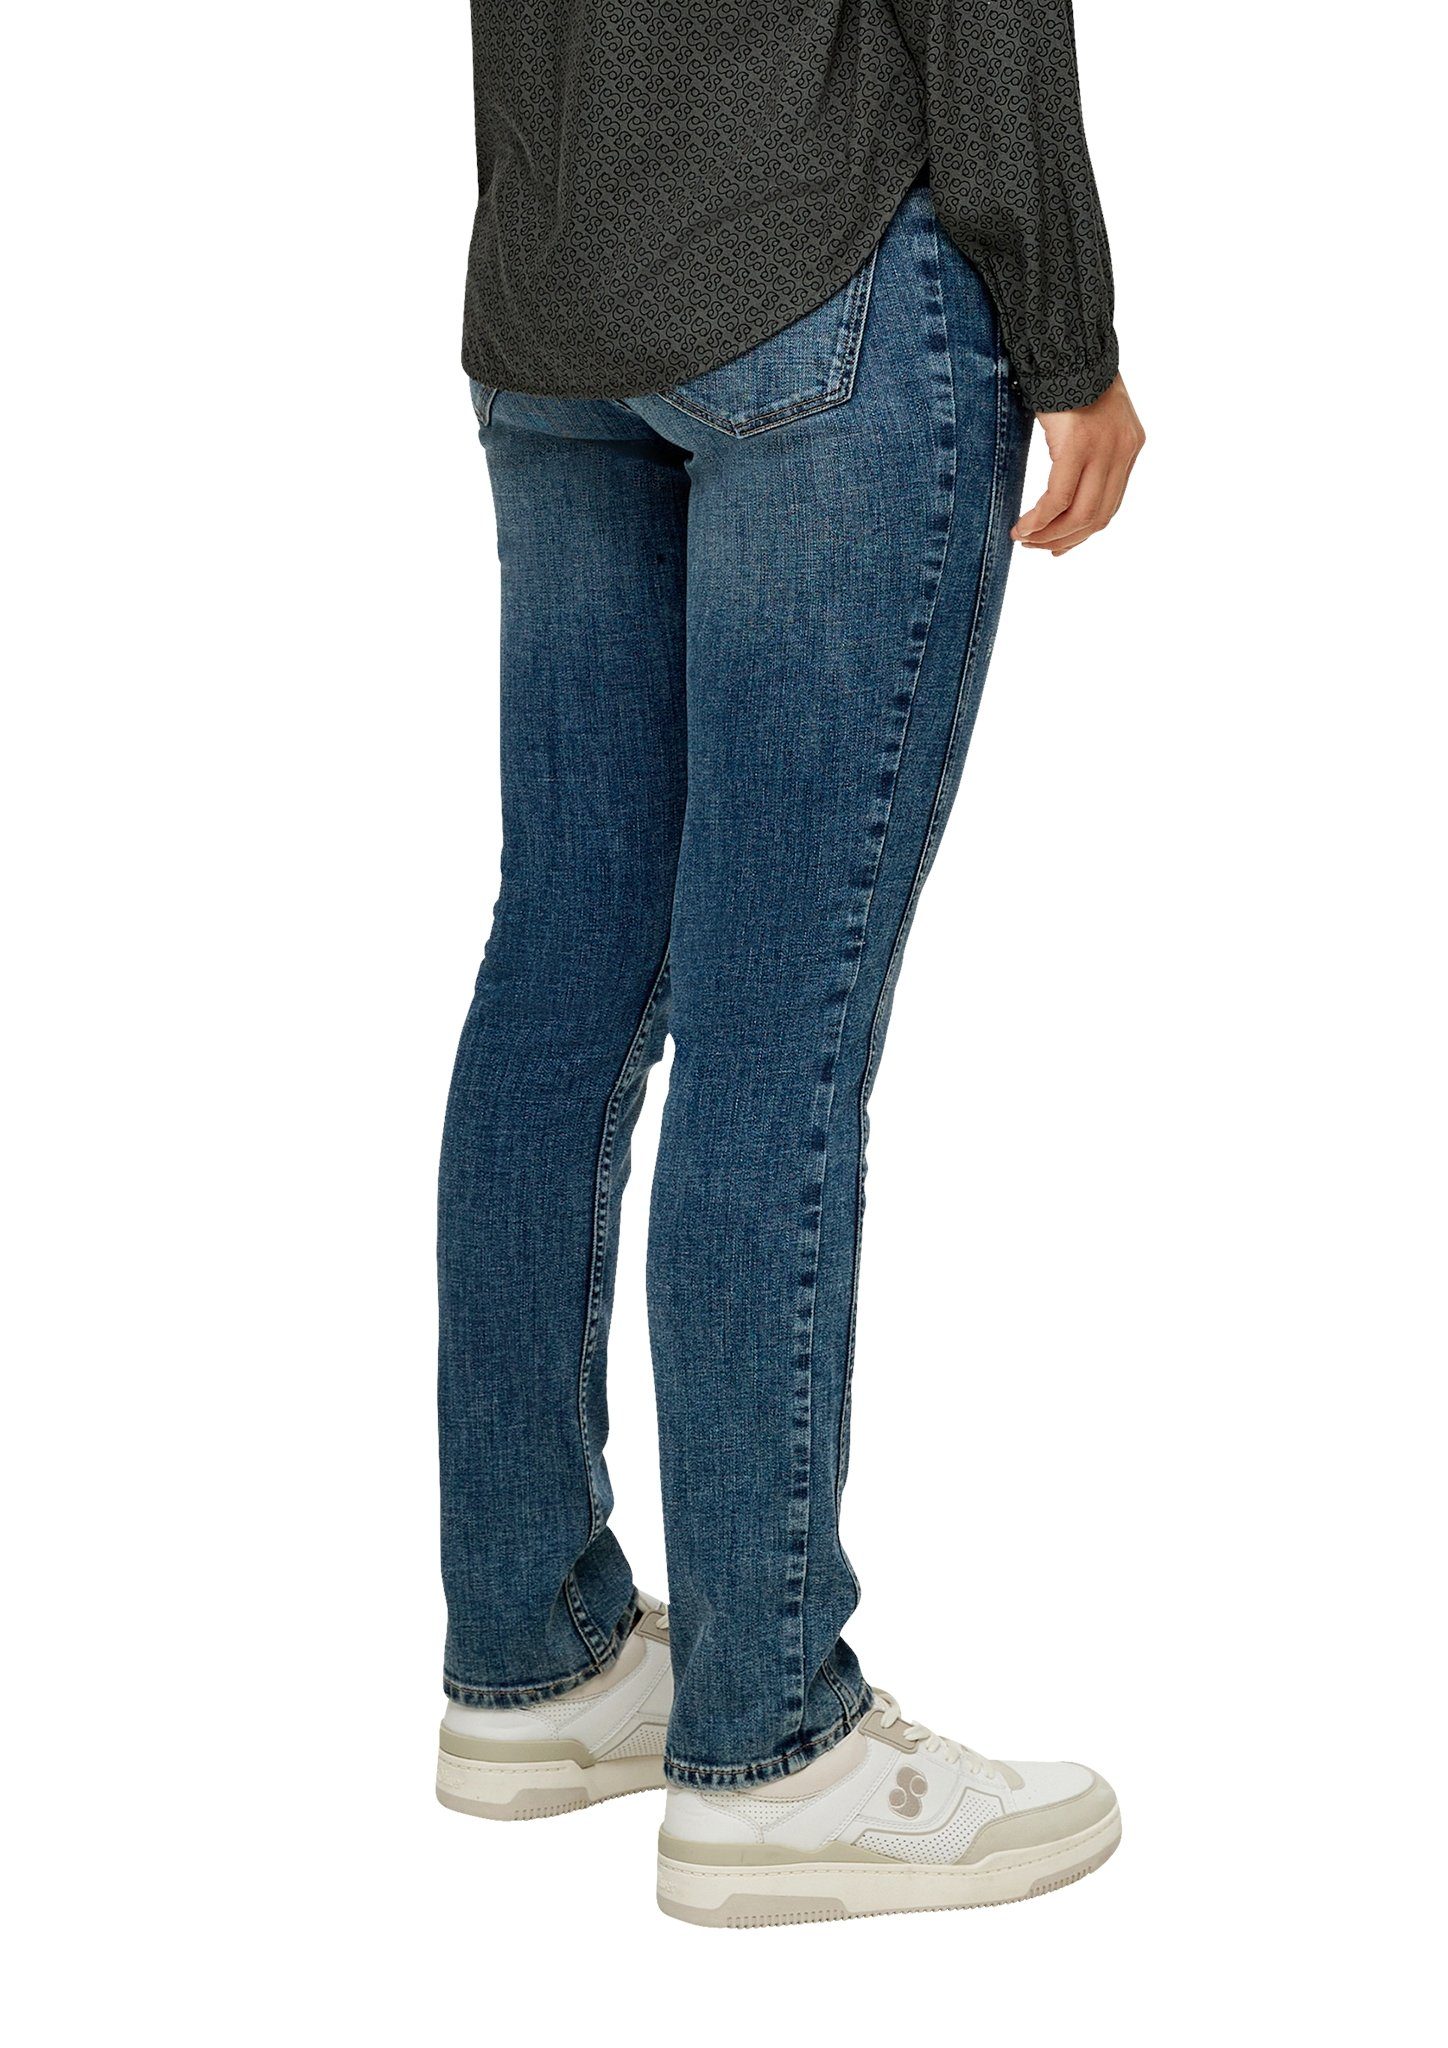 Jeans-Hose s.Oliver 5-Pocket-Jeans Blau